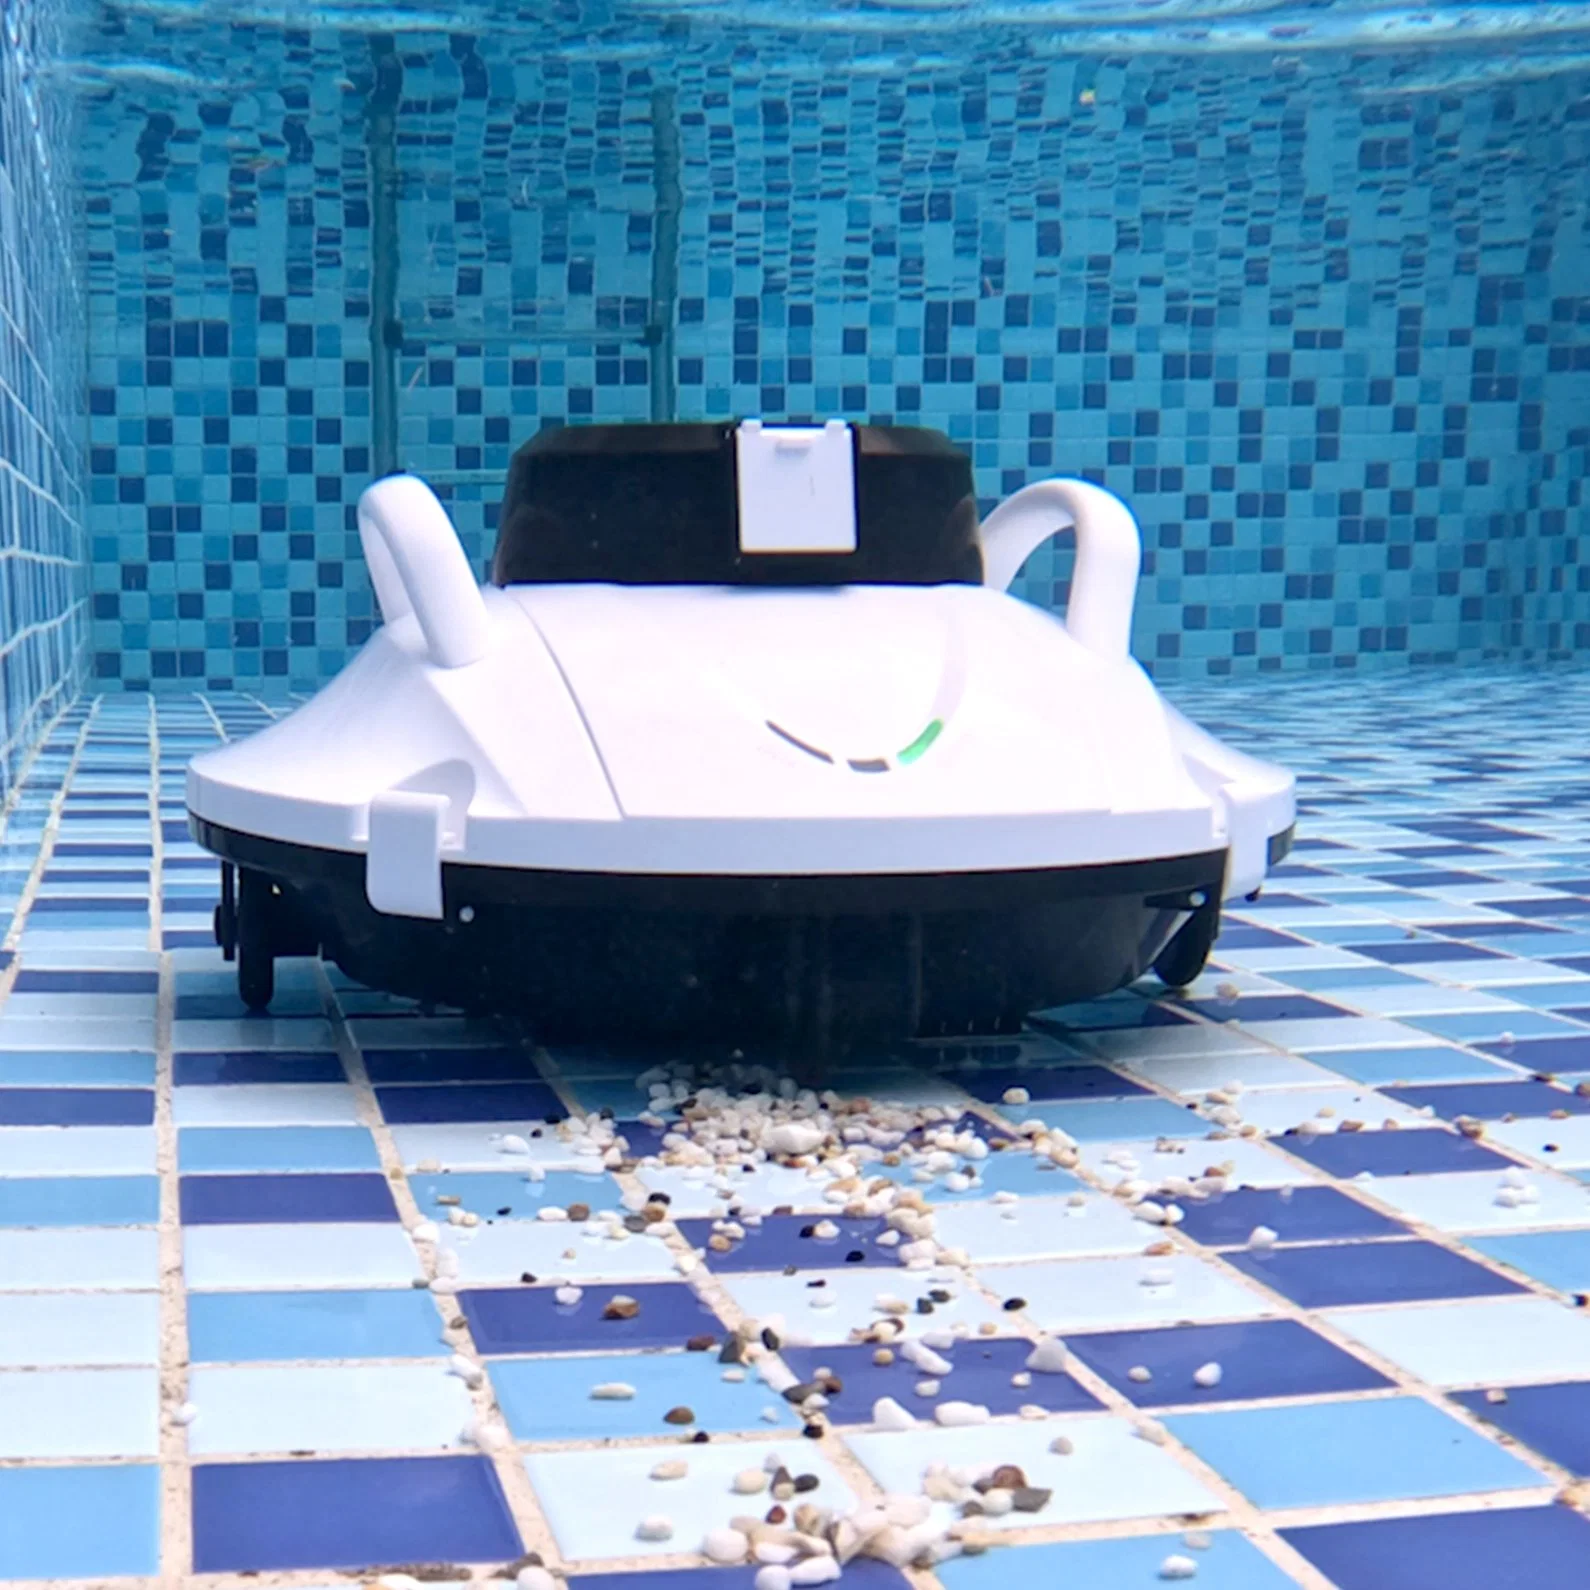 Fabricante Underwater Cordless Robótica automática Piscina Limpieza Equipo de Limpieza Herramienta Juegos de agua Eski de agua Robot limpio Piscina de mopa Aspiradora